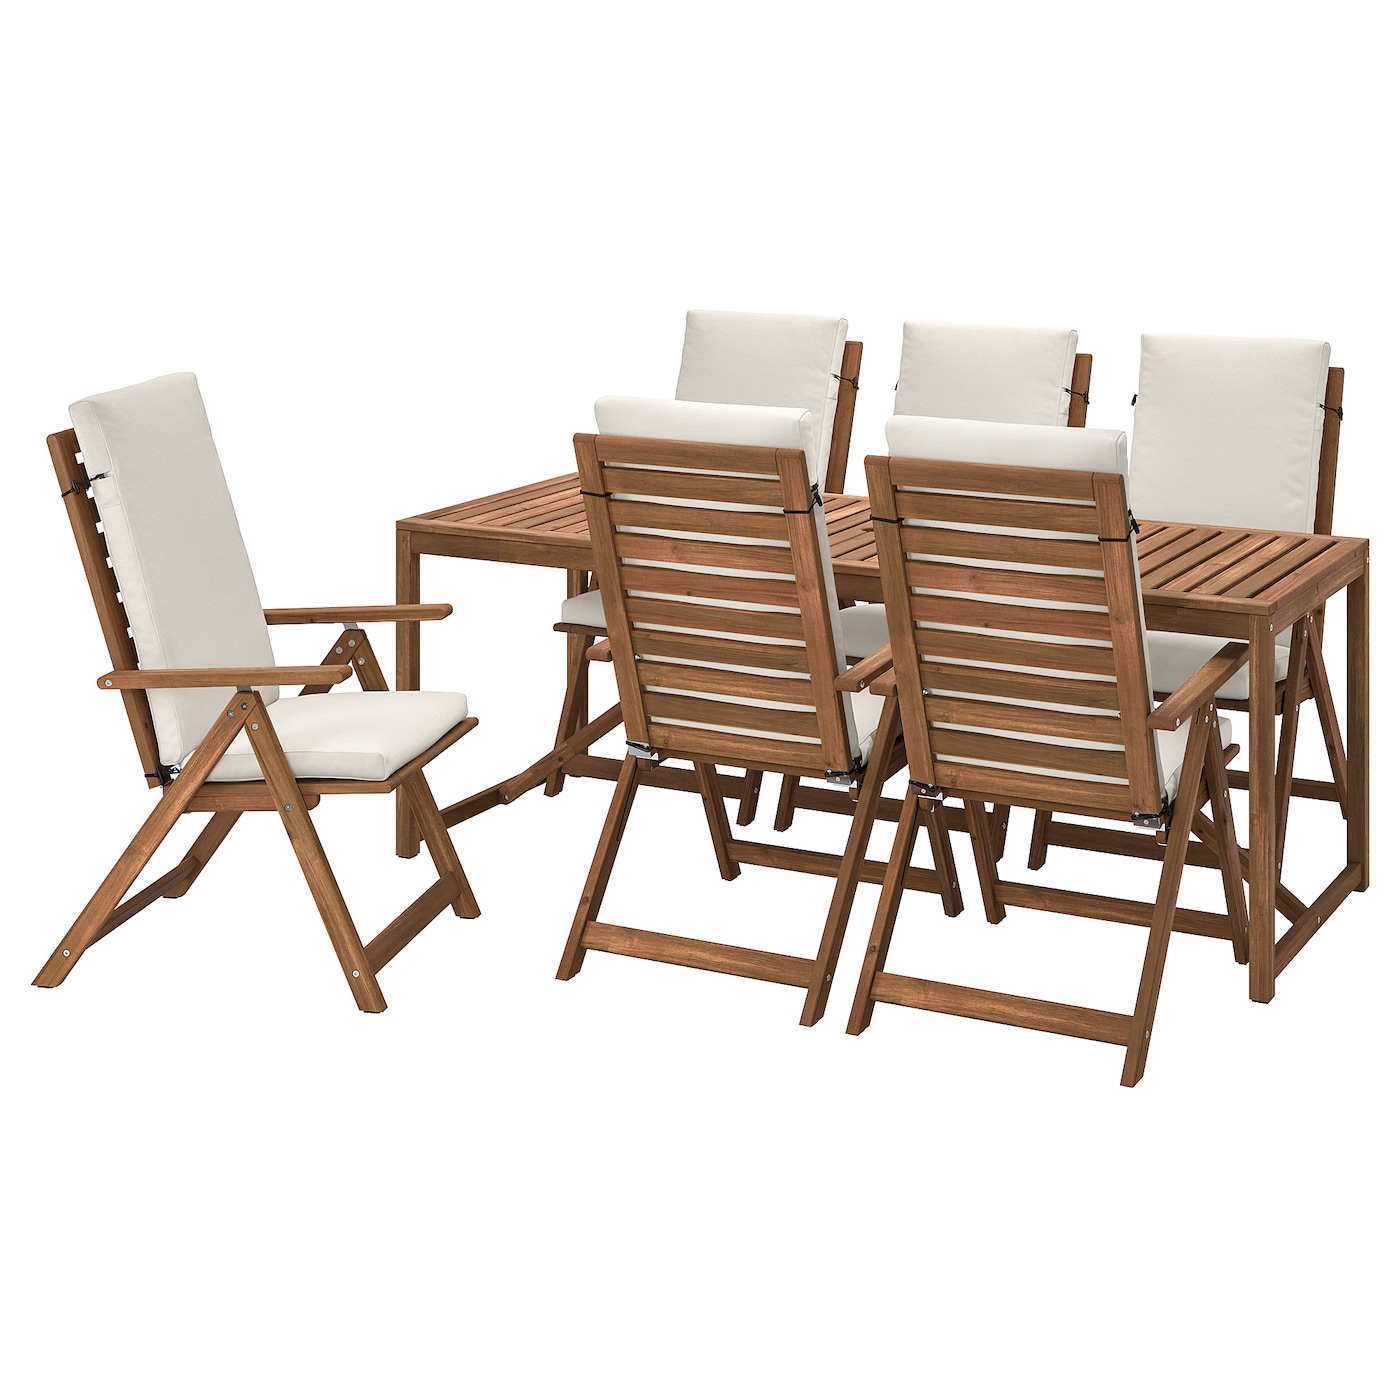 Стол + 6 стула -NÄMMARÖ / NАMMARО IKEA/  НАММАРО ИКЕА, 235х90х74 см, коричневый/белый